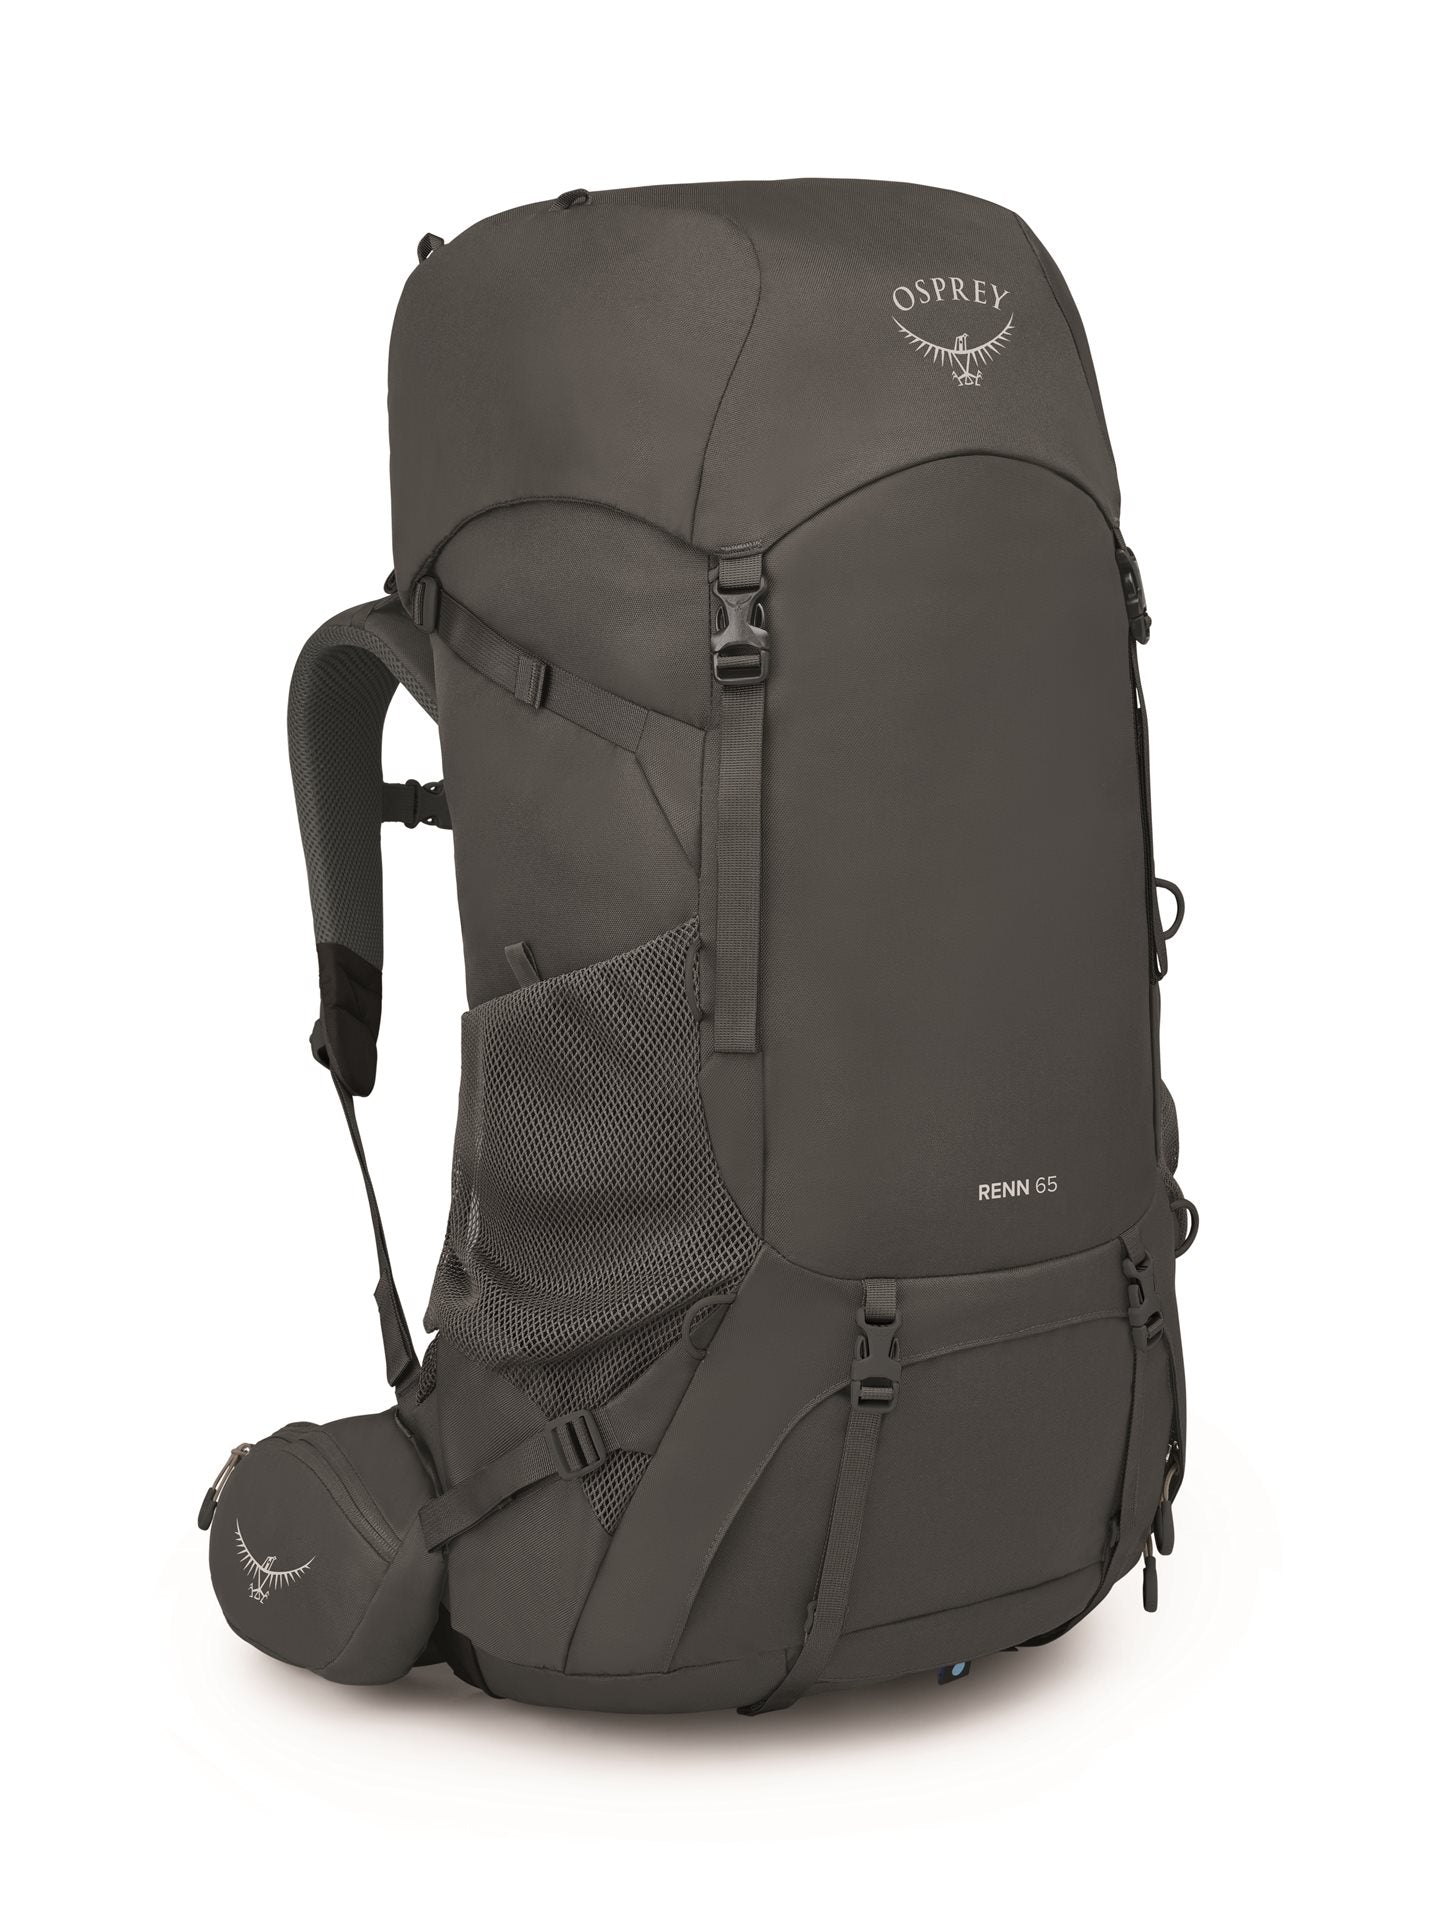 Osprey Renn 65 - Dark Charcoal/Gray Wolf Backpack - Reisartikelen-nl